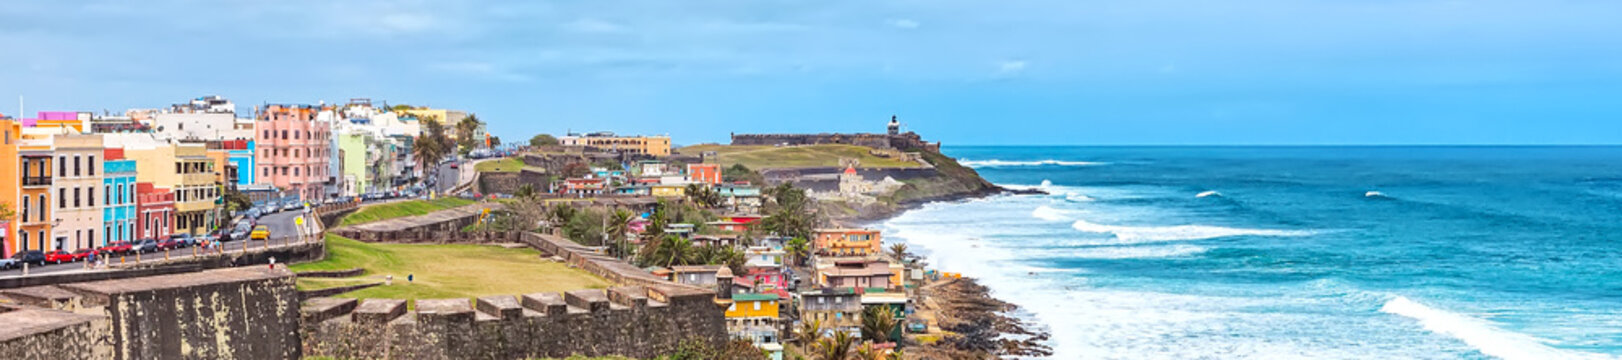 Panorama of San Juan, Puerto Rico Coastline